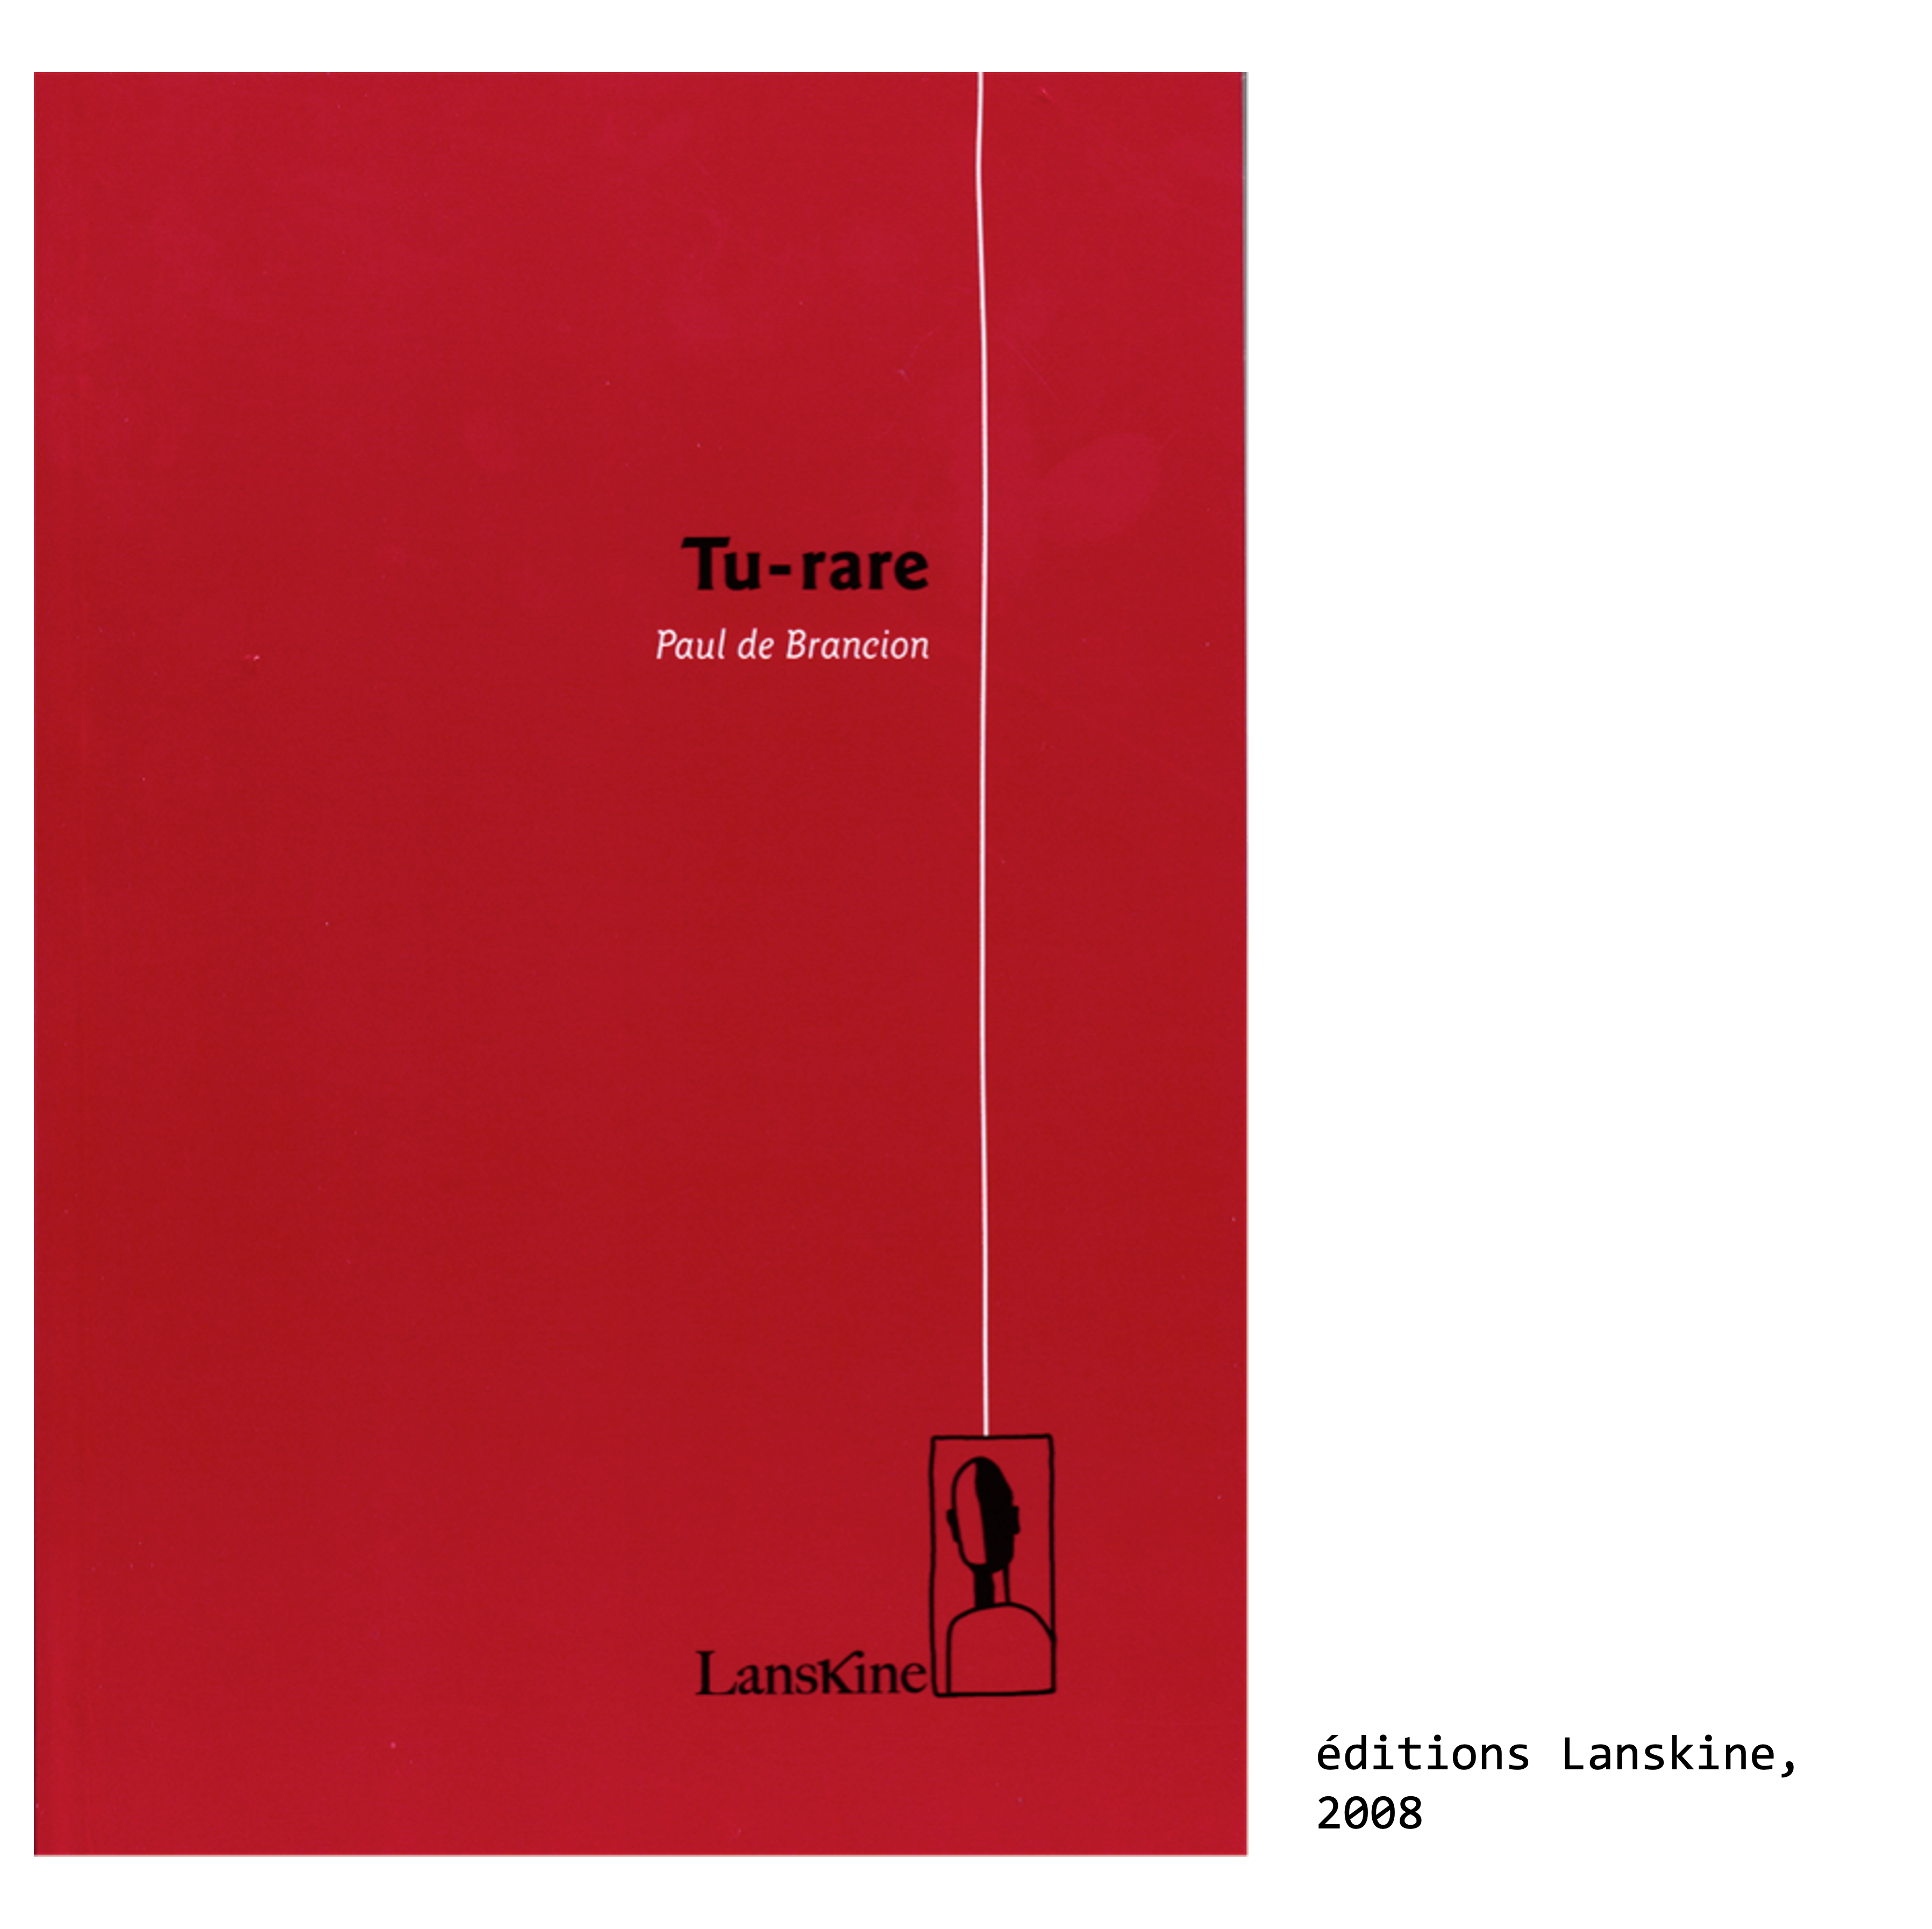 Couverture du livre de Paul de Brancion, écrivain et poète : Tu-Rare, éditions Lanskine, 2008